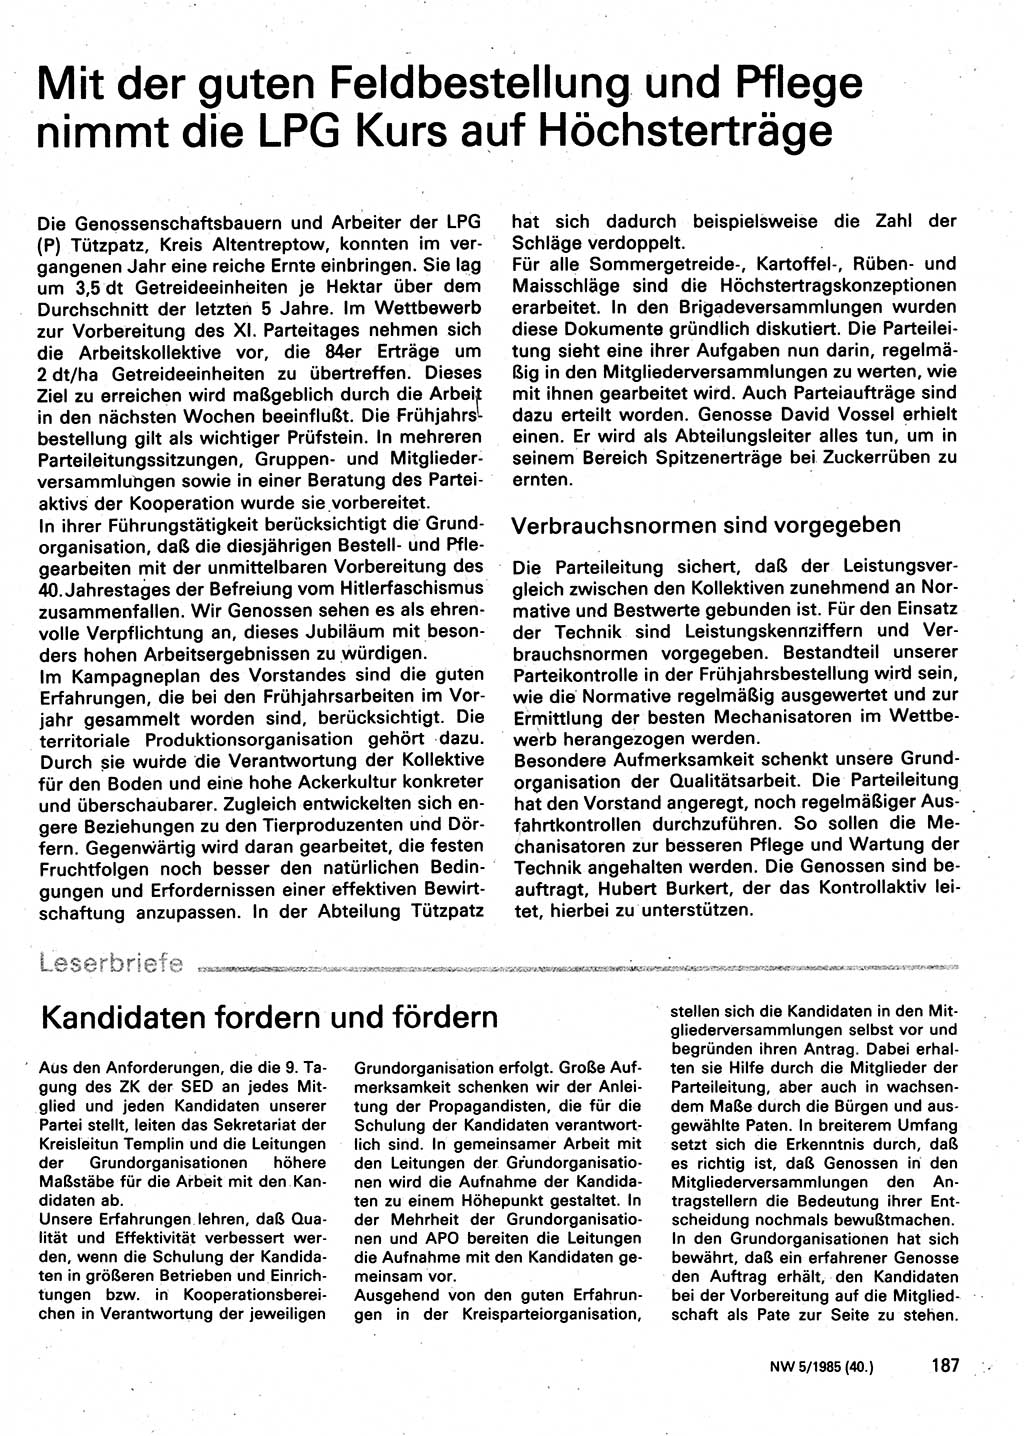 Neuer Weg (NW), Organ des Zentralkomitees (ZK) der SED (Sozialistische Einheitspartei Deutschlands) für Fragen des Parteilebens, 40. Jahrgang [Deutsche Demokratische Republik (DDR)] 1985, Seite 187 (NW ZK SED DDR 1985, S. 187)